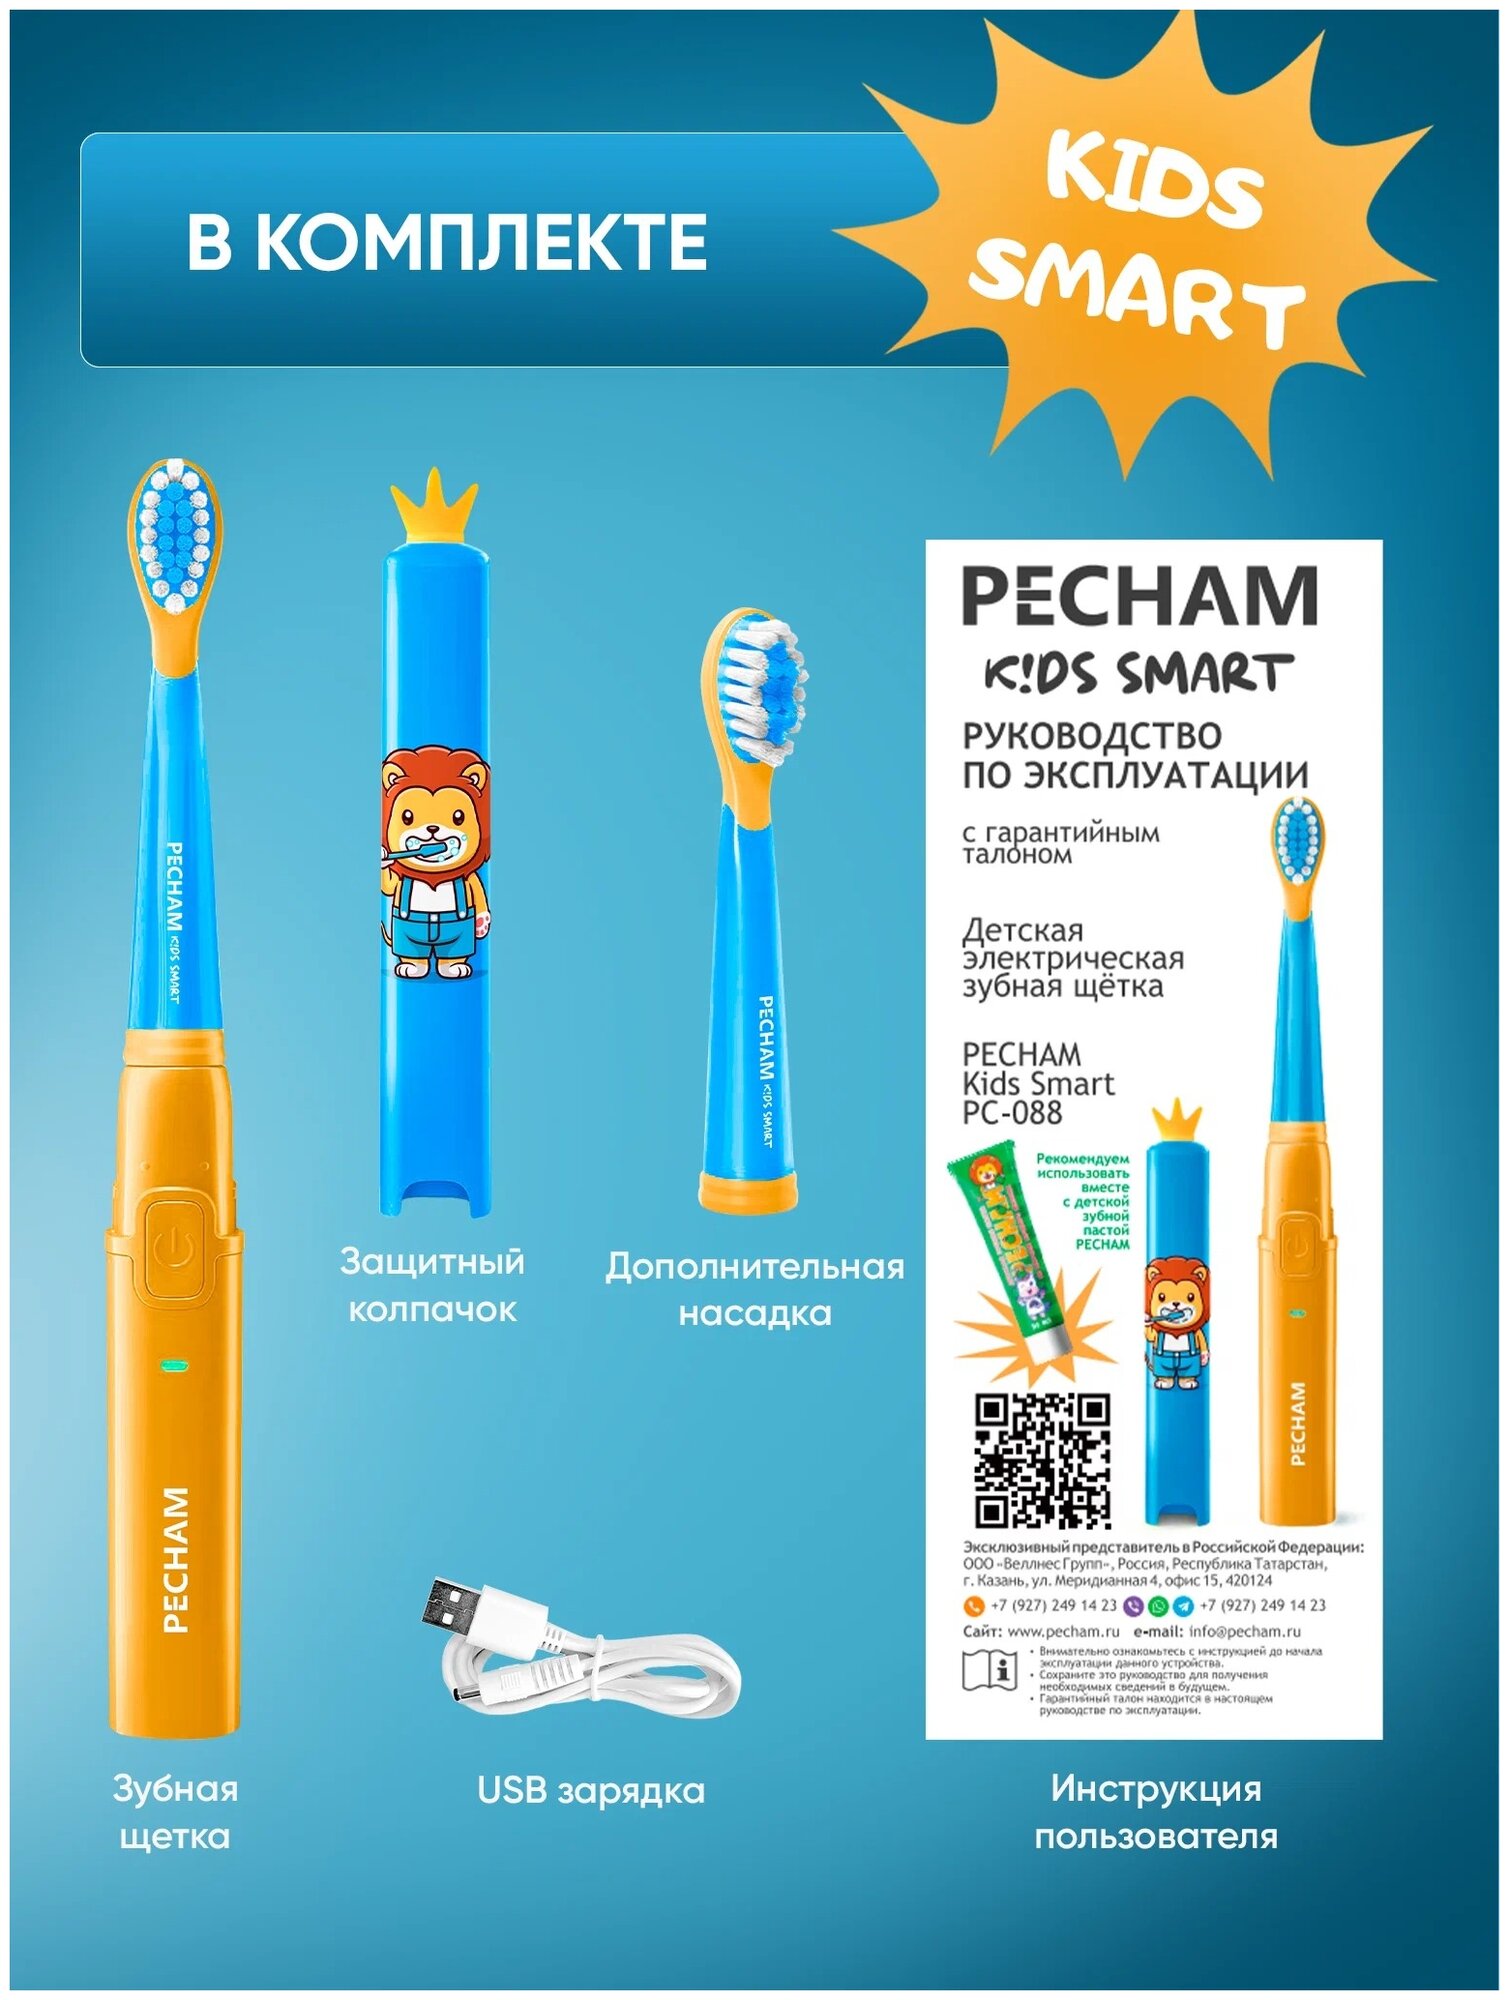 Электрическая зубная щетка PECHAM Kids Smart